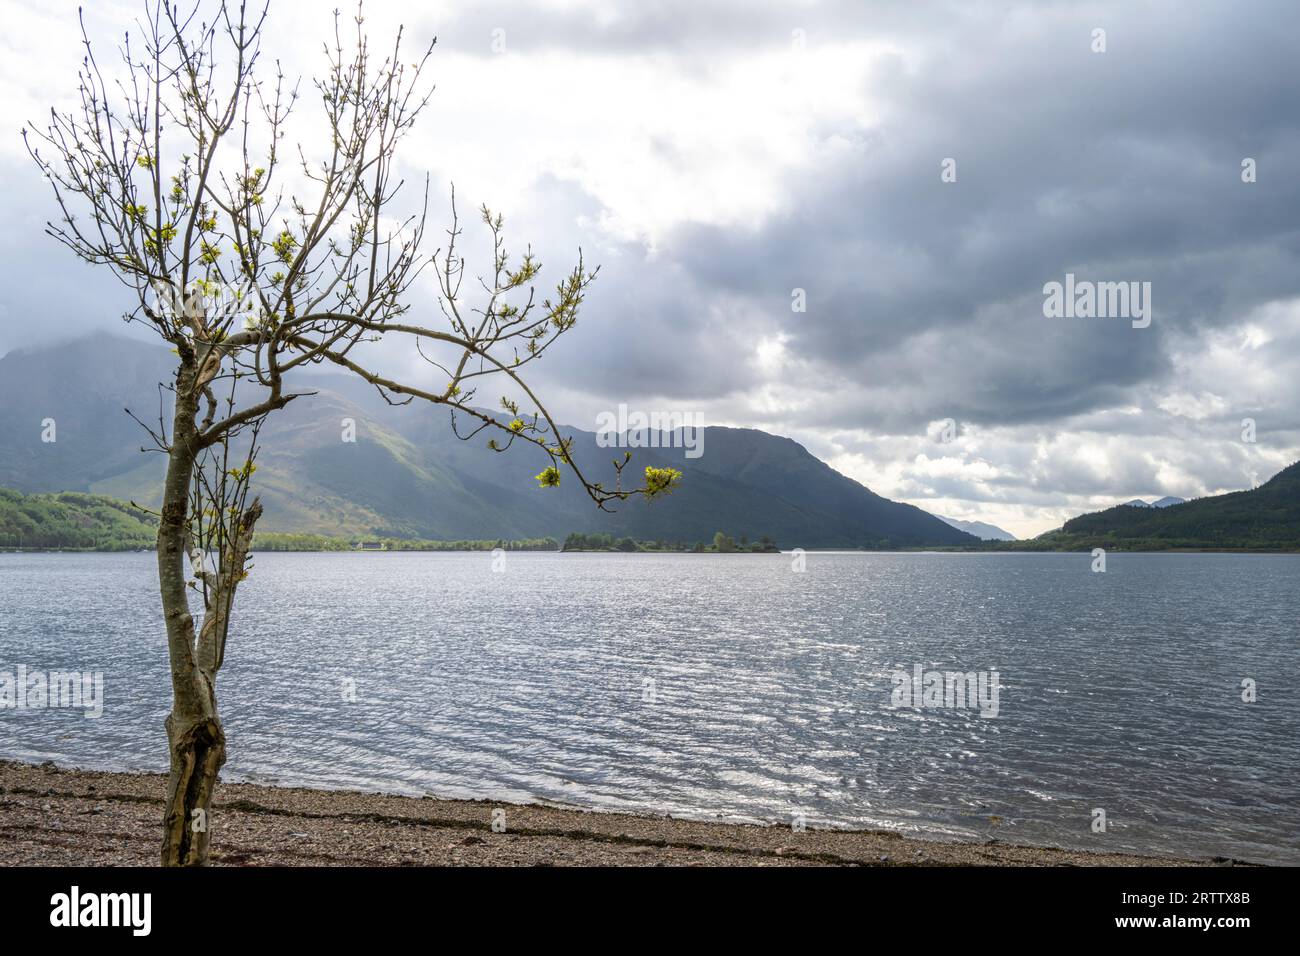 Loch Leven in Glencoe Scotland Stock Photo - Alamy